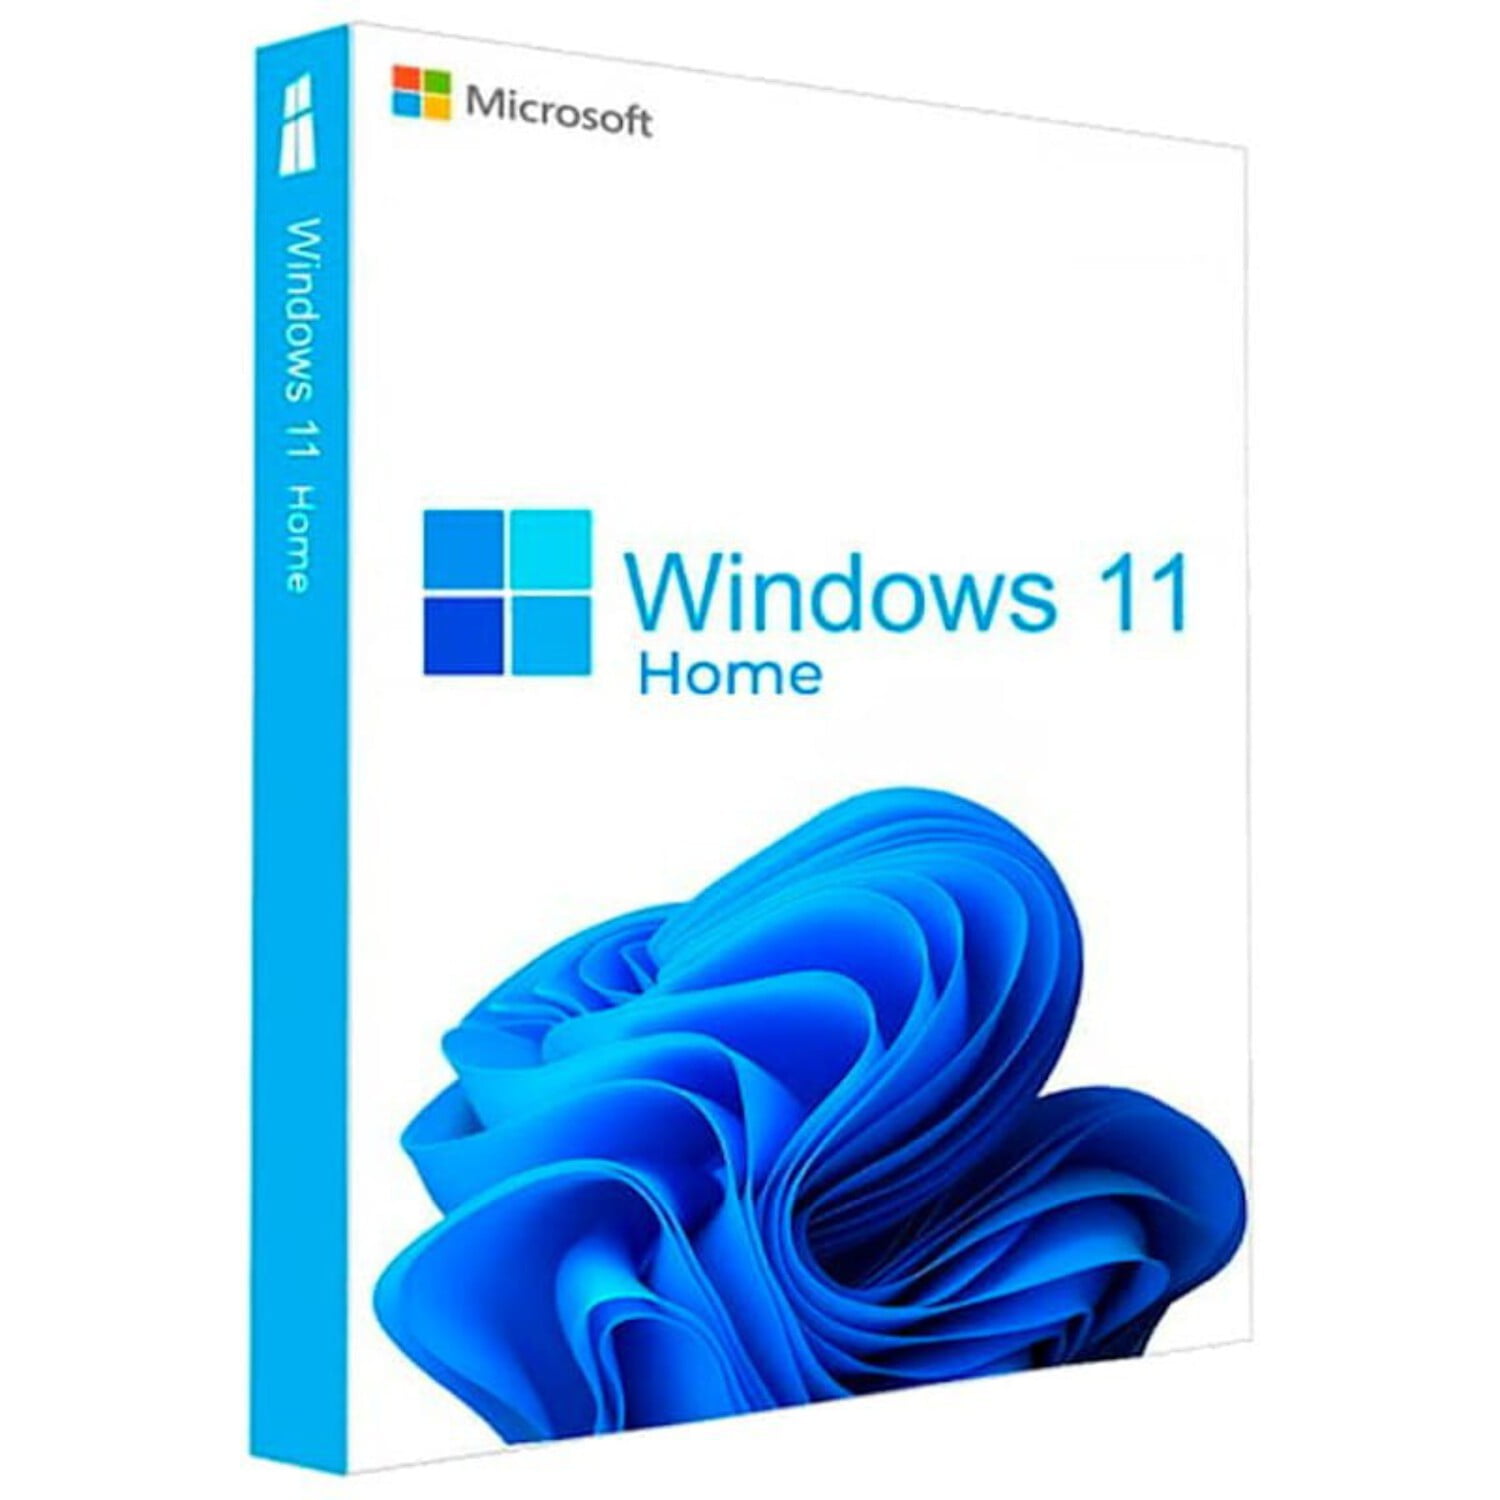 Buy Windows 10 Home, Window Home Product Key - at o2keys.com